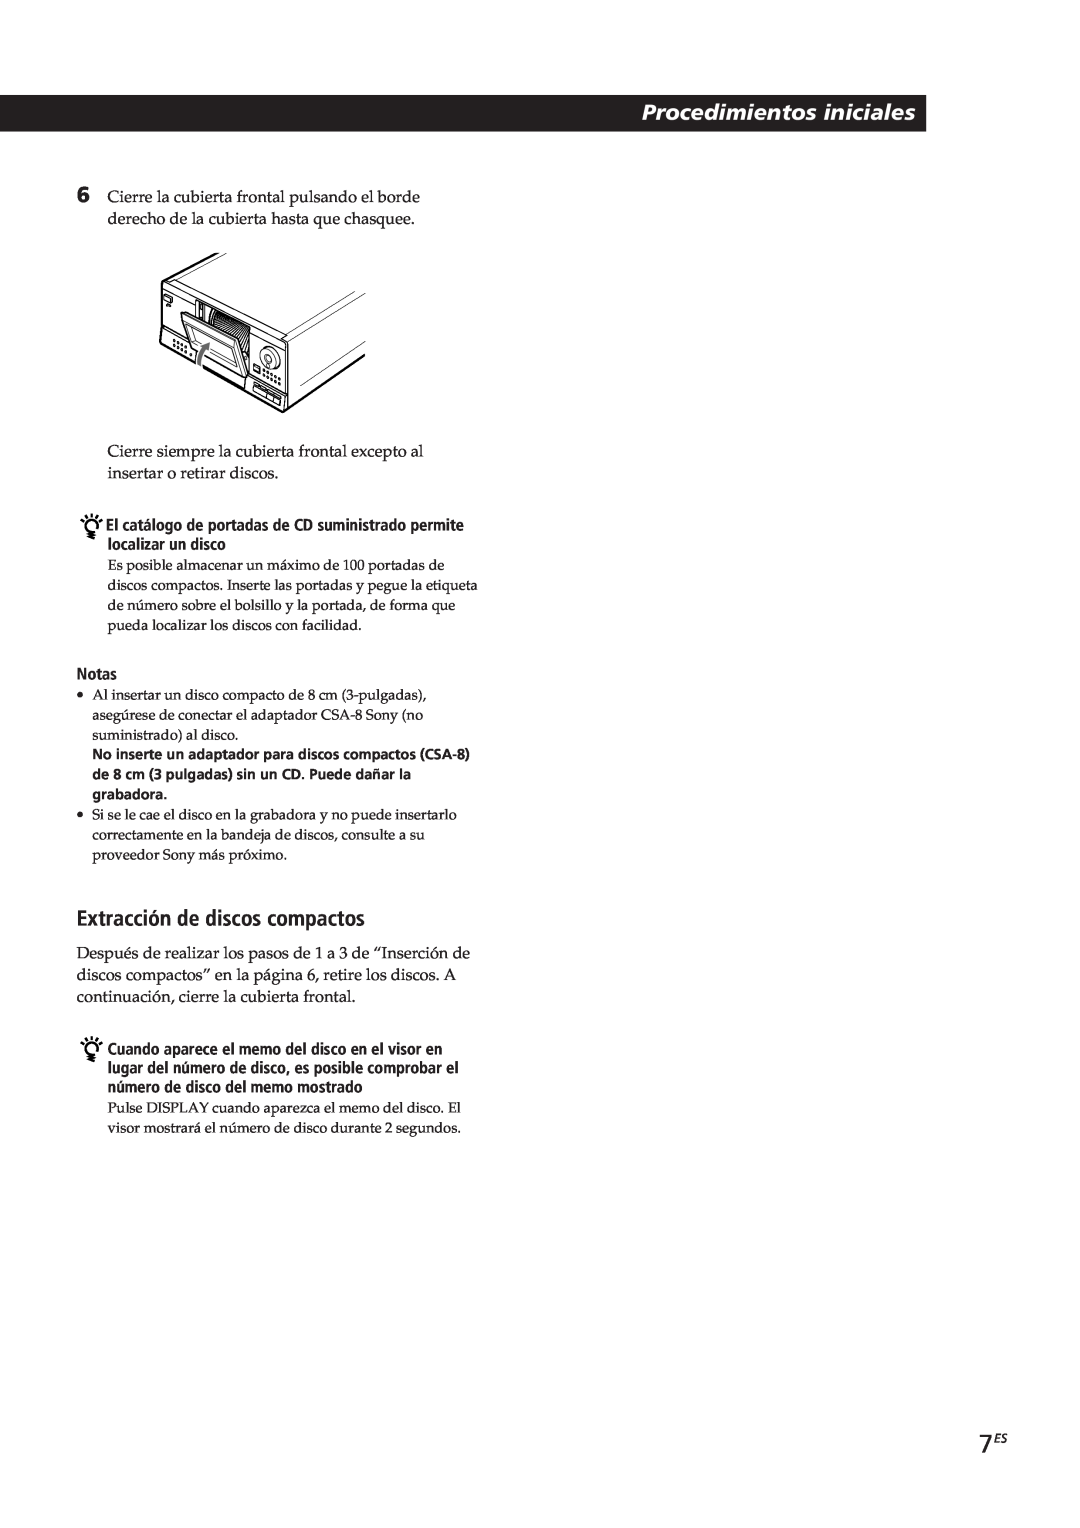 Sony CDP-CX153 manual Procedimientos iniciales, Extracción de discos compactos, Notas 